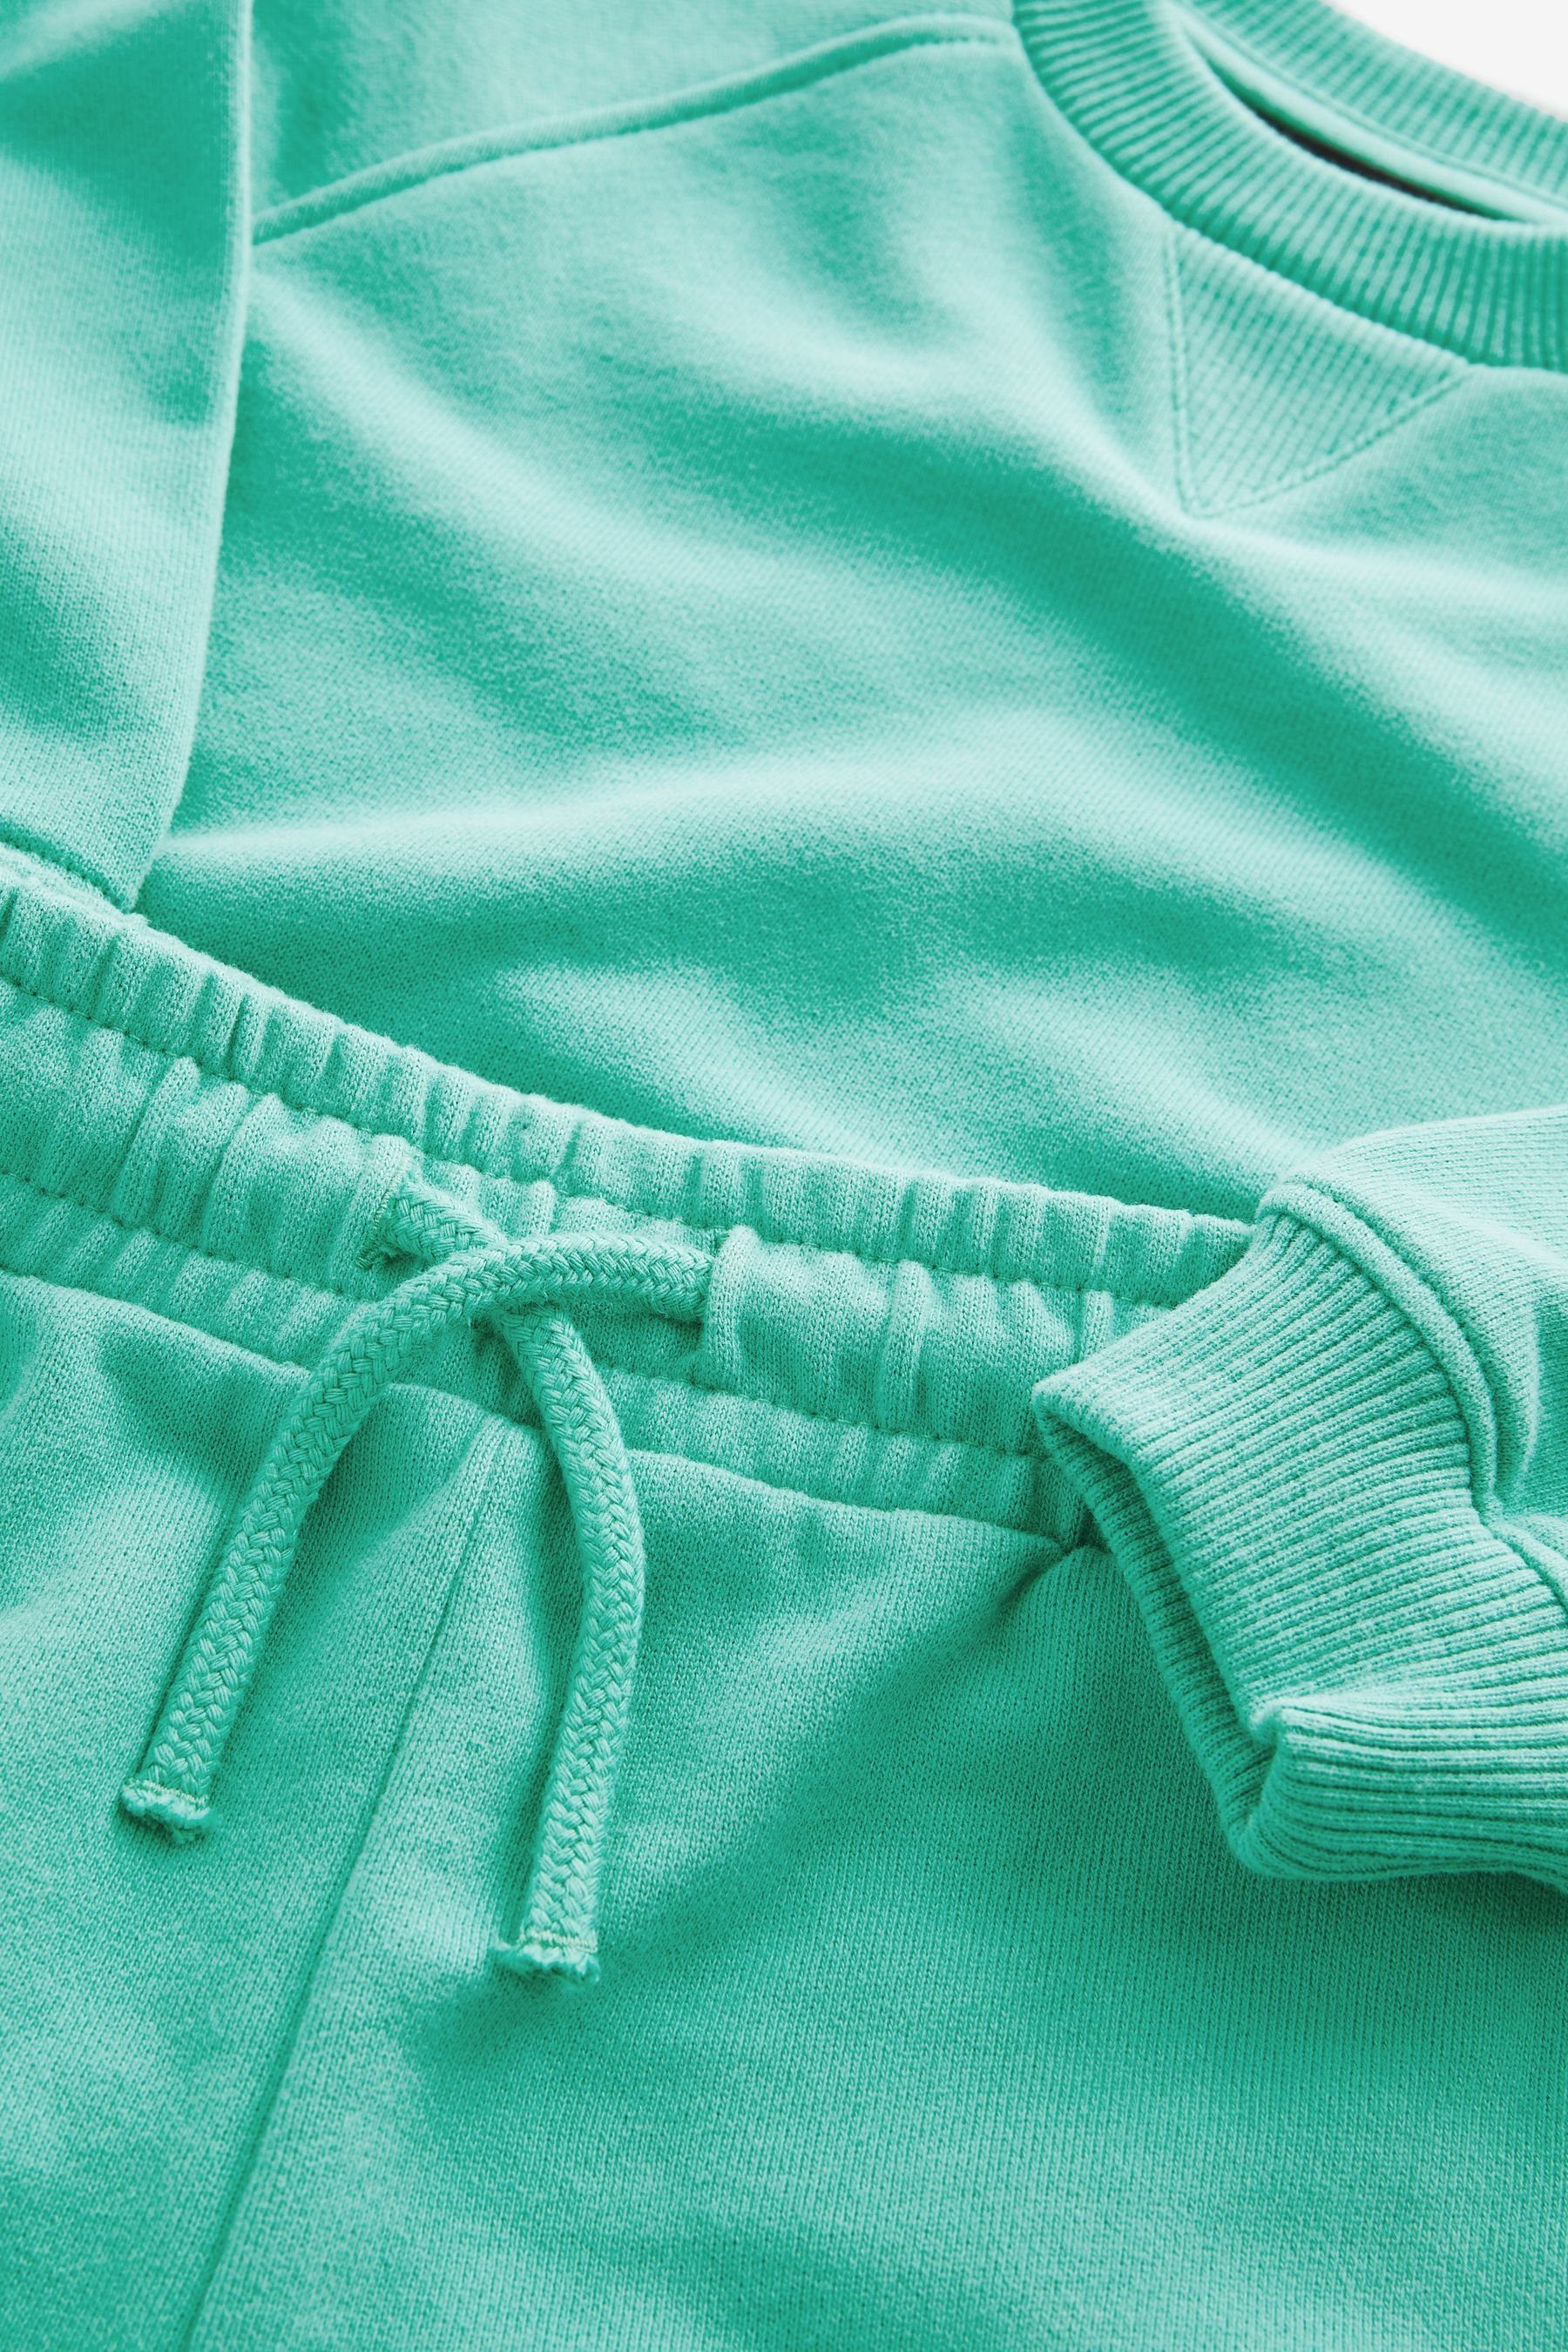 Mint im (2-tlg) Set Green Shorts Next Oversized-Sweatshirt und Sweatanzug